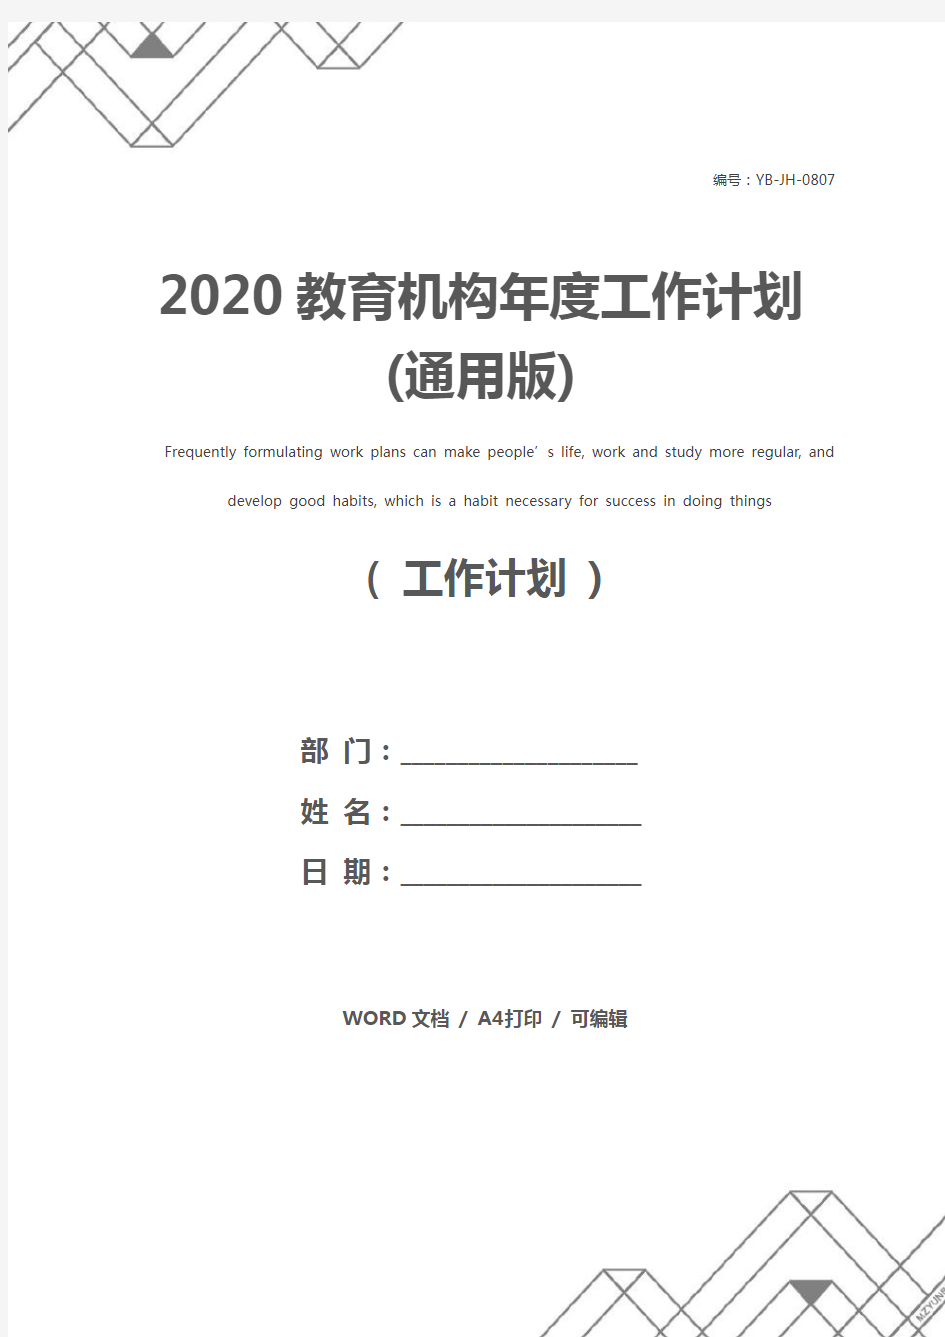 2020教育机构年度工作计划(通用版)